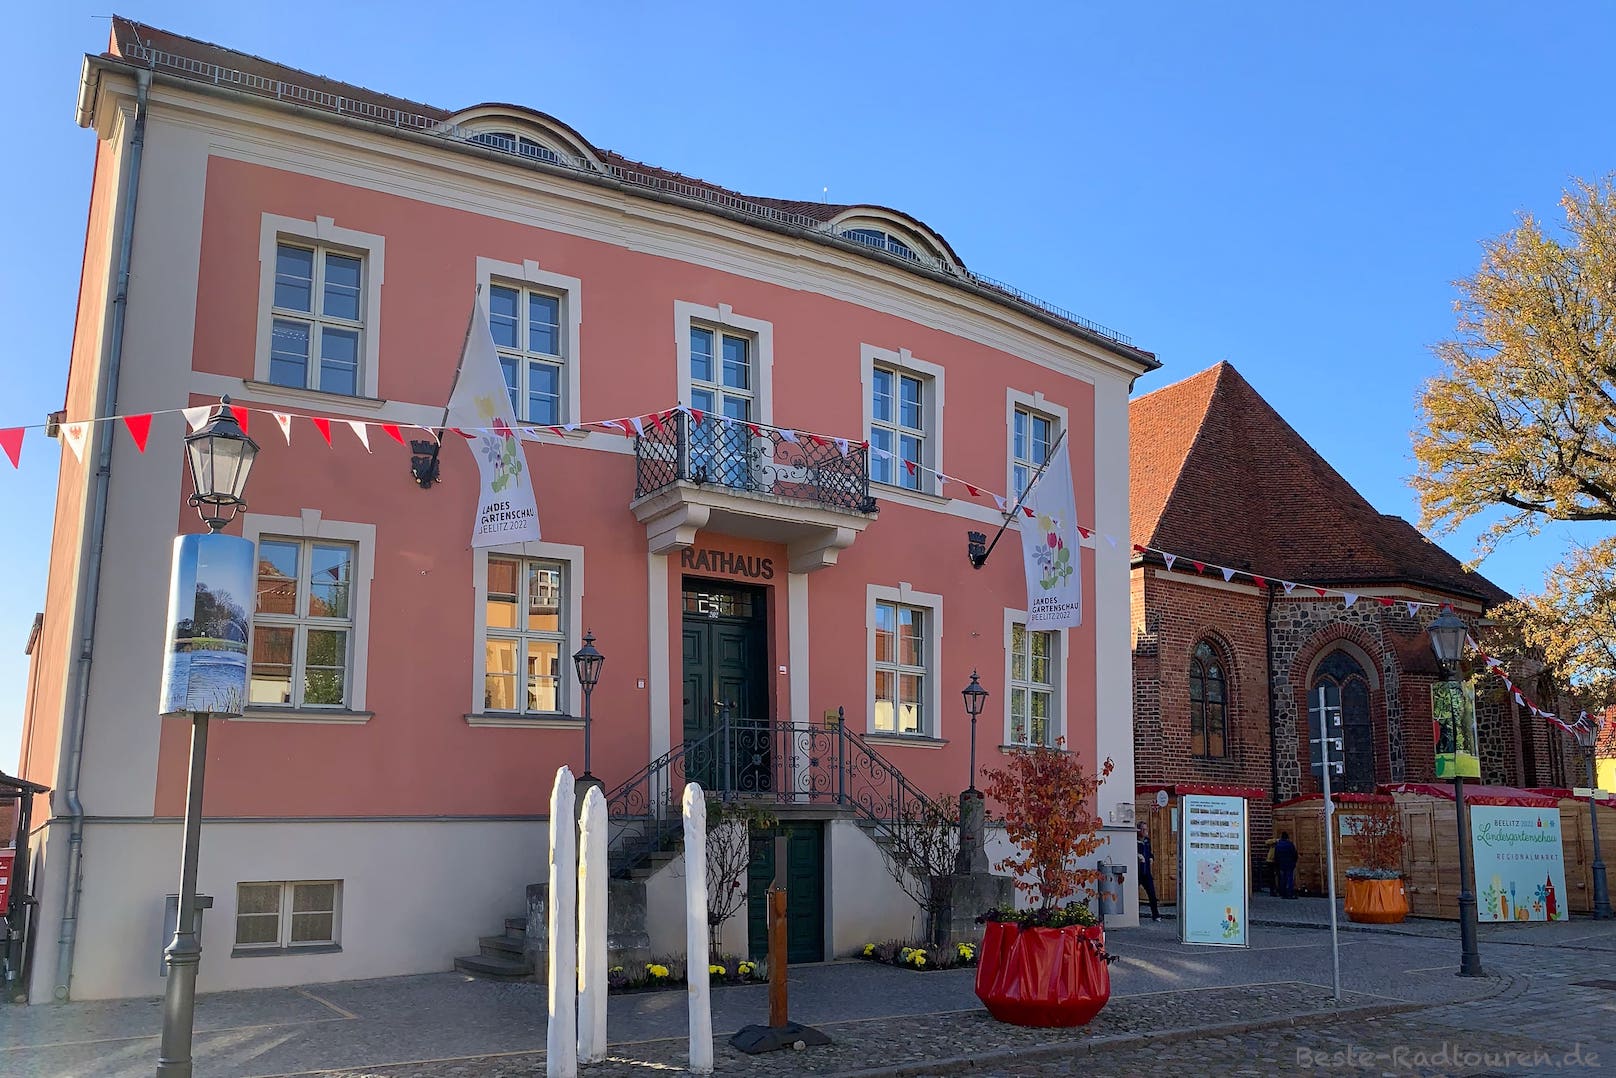 Rathaus von Beelitz mit Fahnen für die Bundesgartenschau 2022; daneben der hintere Teil der Stadtkirche